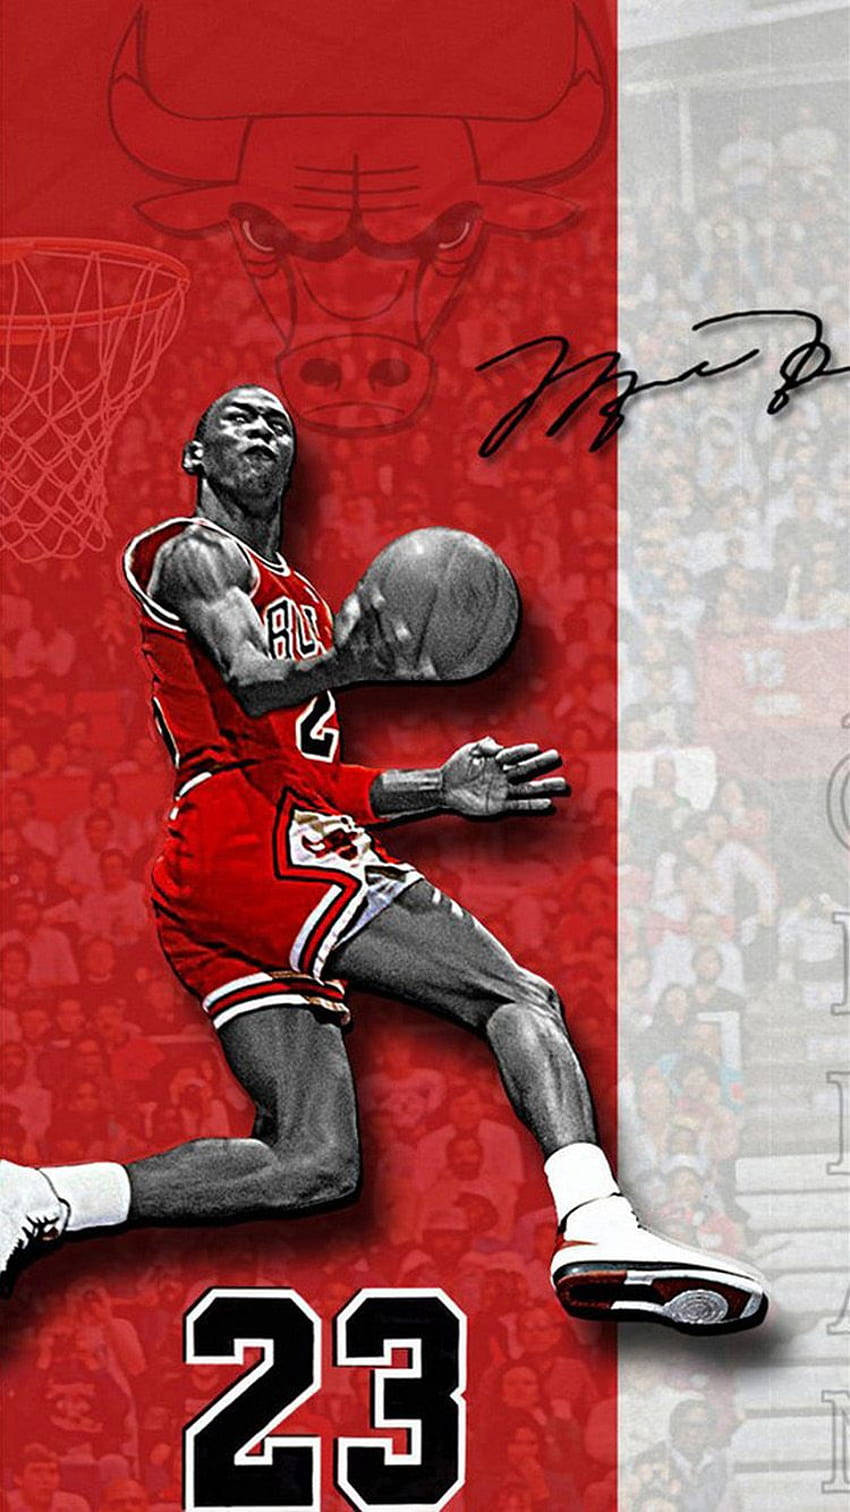 Cool Autographed Jordan Fan-art Wallpaper